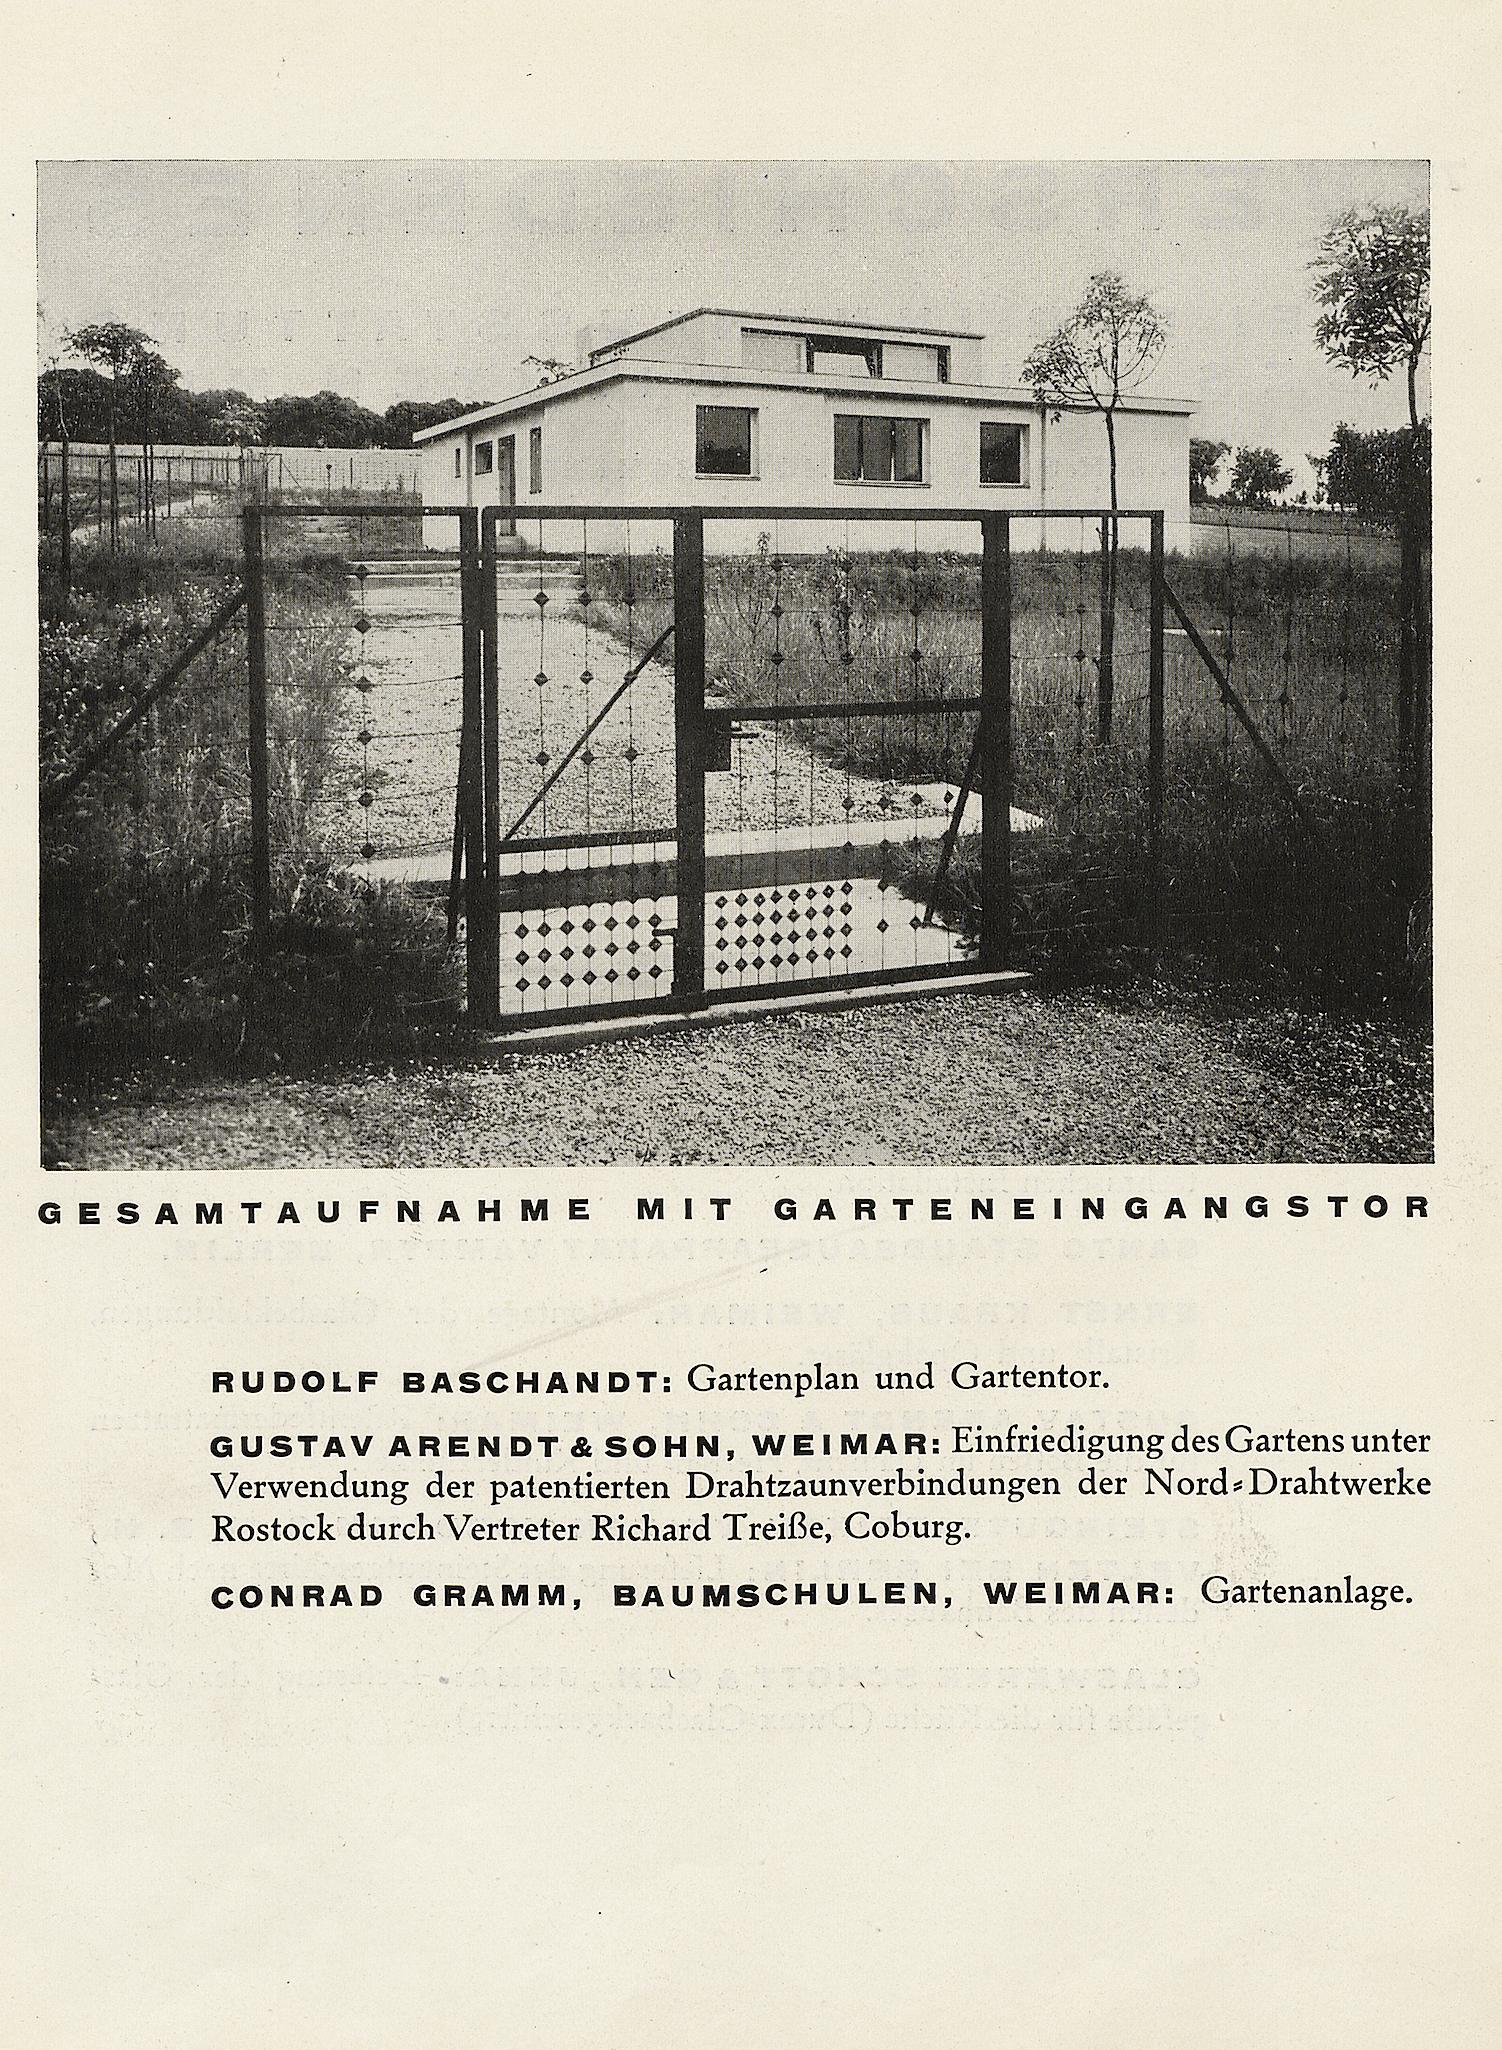 Ein Versuchshaus des Bauhauses in Weimar / Zusammengestellt von Adolf Meyer. — München : Albert Langen Verlag, 1925. — 78 s., ill. — (Bauhausbücher 3)